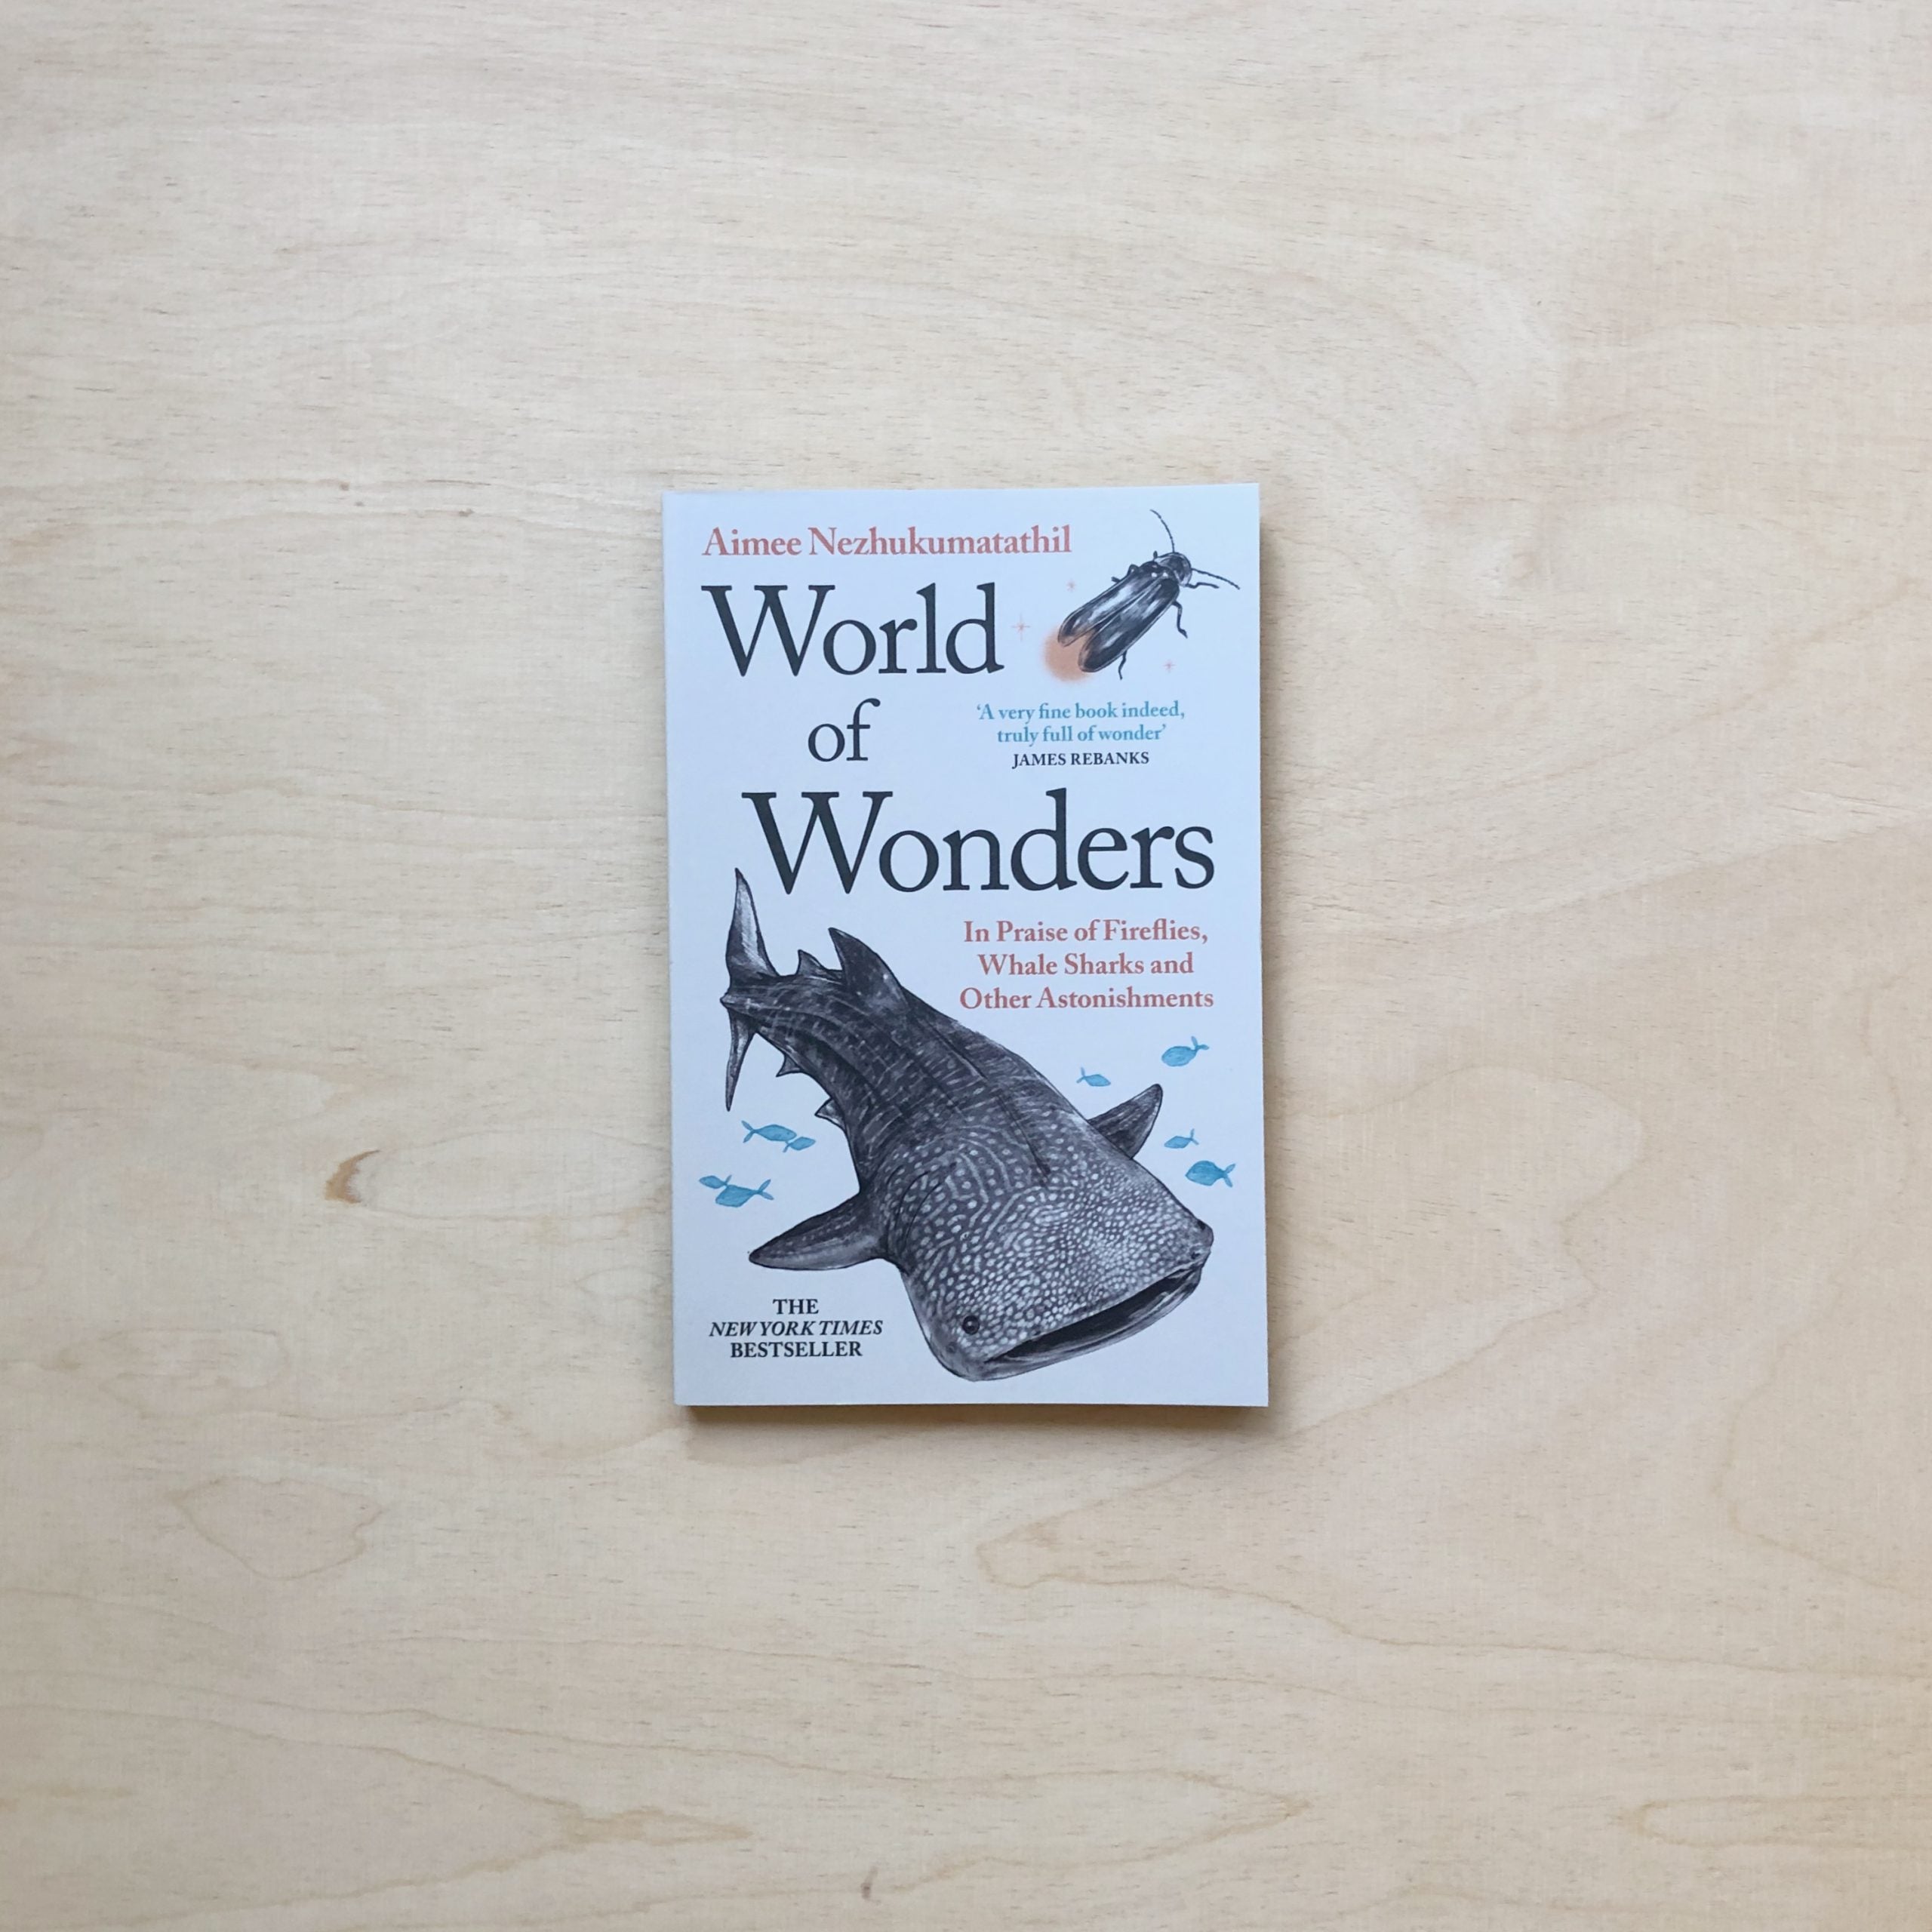 Buchladen　Wonders　Kultur　und　Zabriskie　World　–　für　of　Paperback　Natur